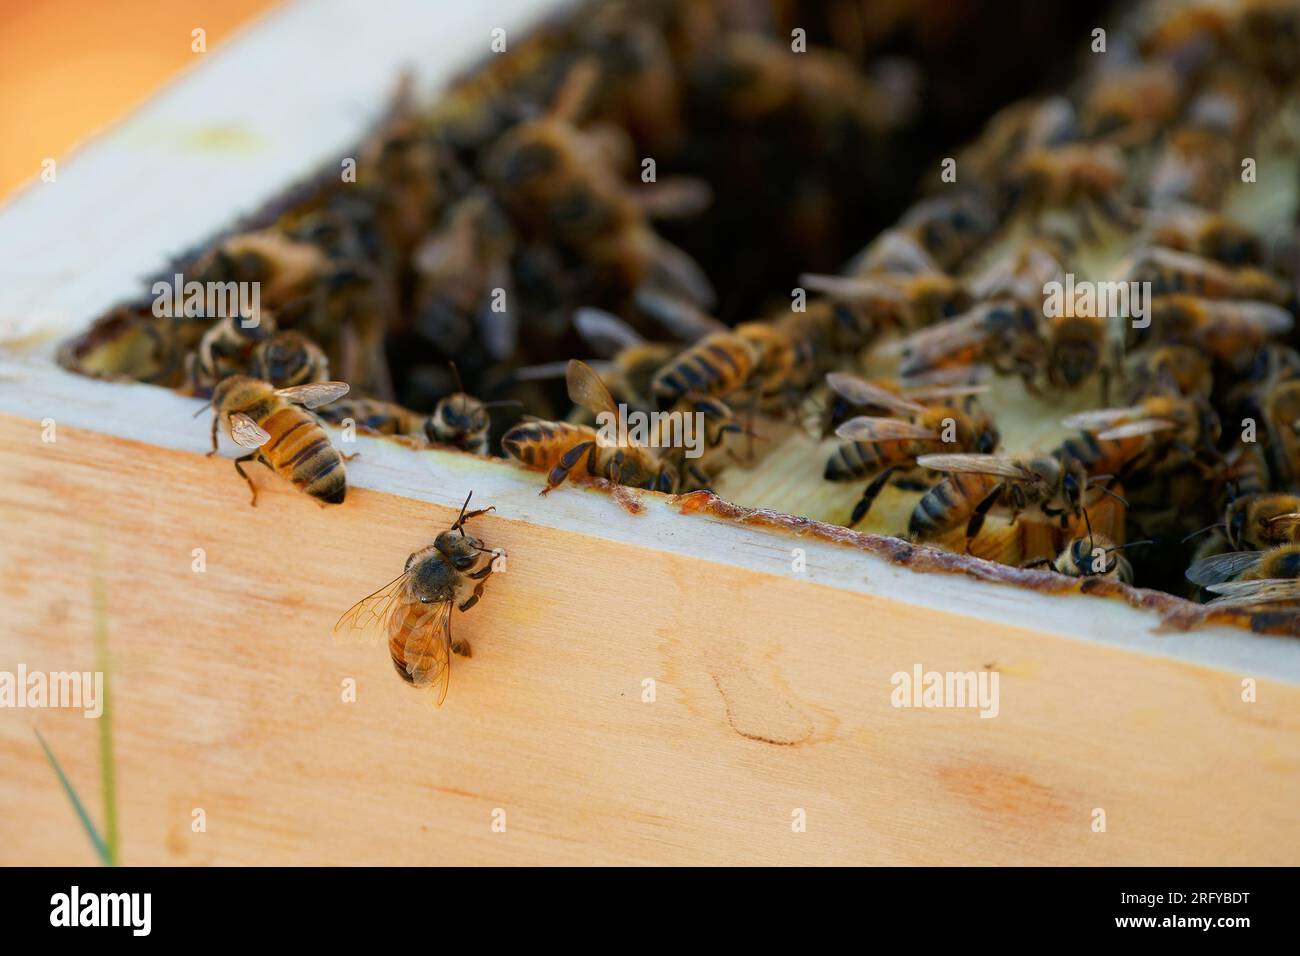 Apiculture ou apiculture, soin des abeilles, travail manuel sur le miel, rucher (également cour à abeilles) avec des ruches et apiculteurs actifs dans l’outback australien, Banque D'Images